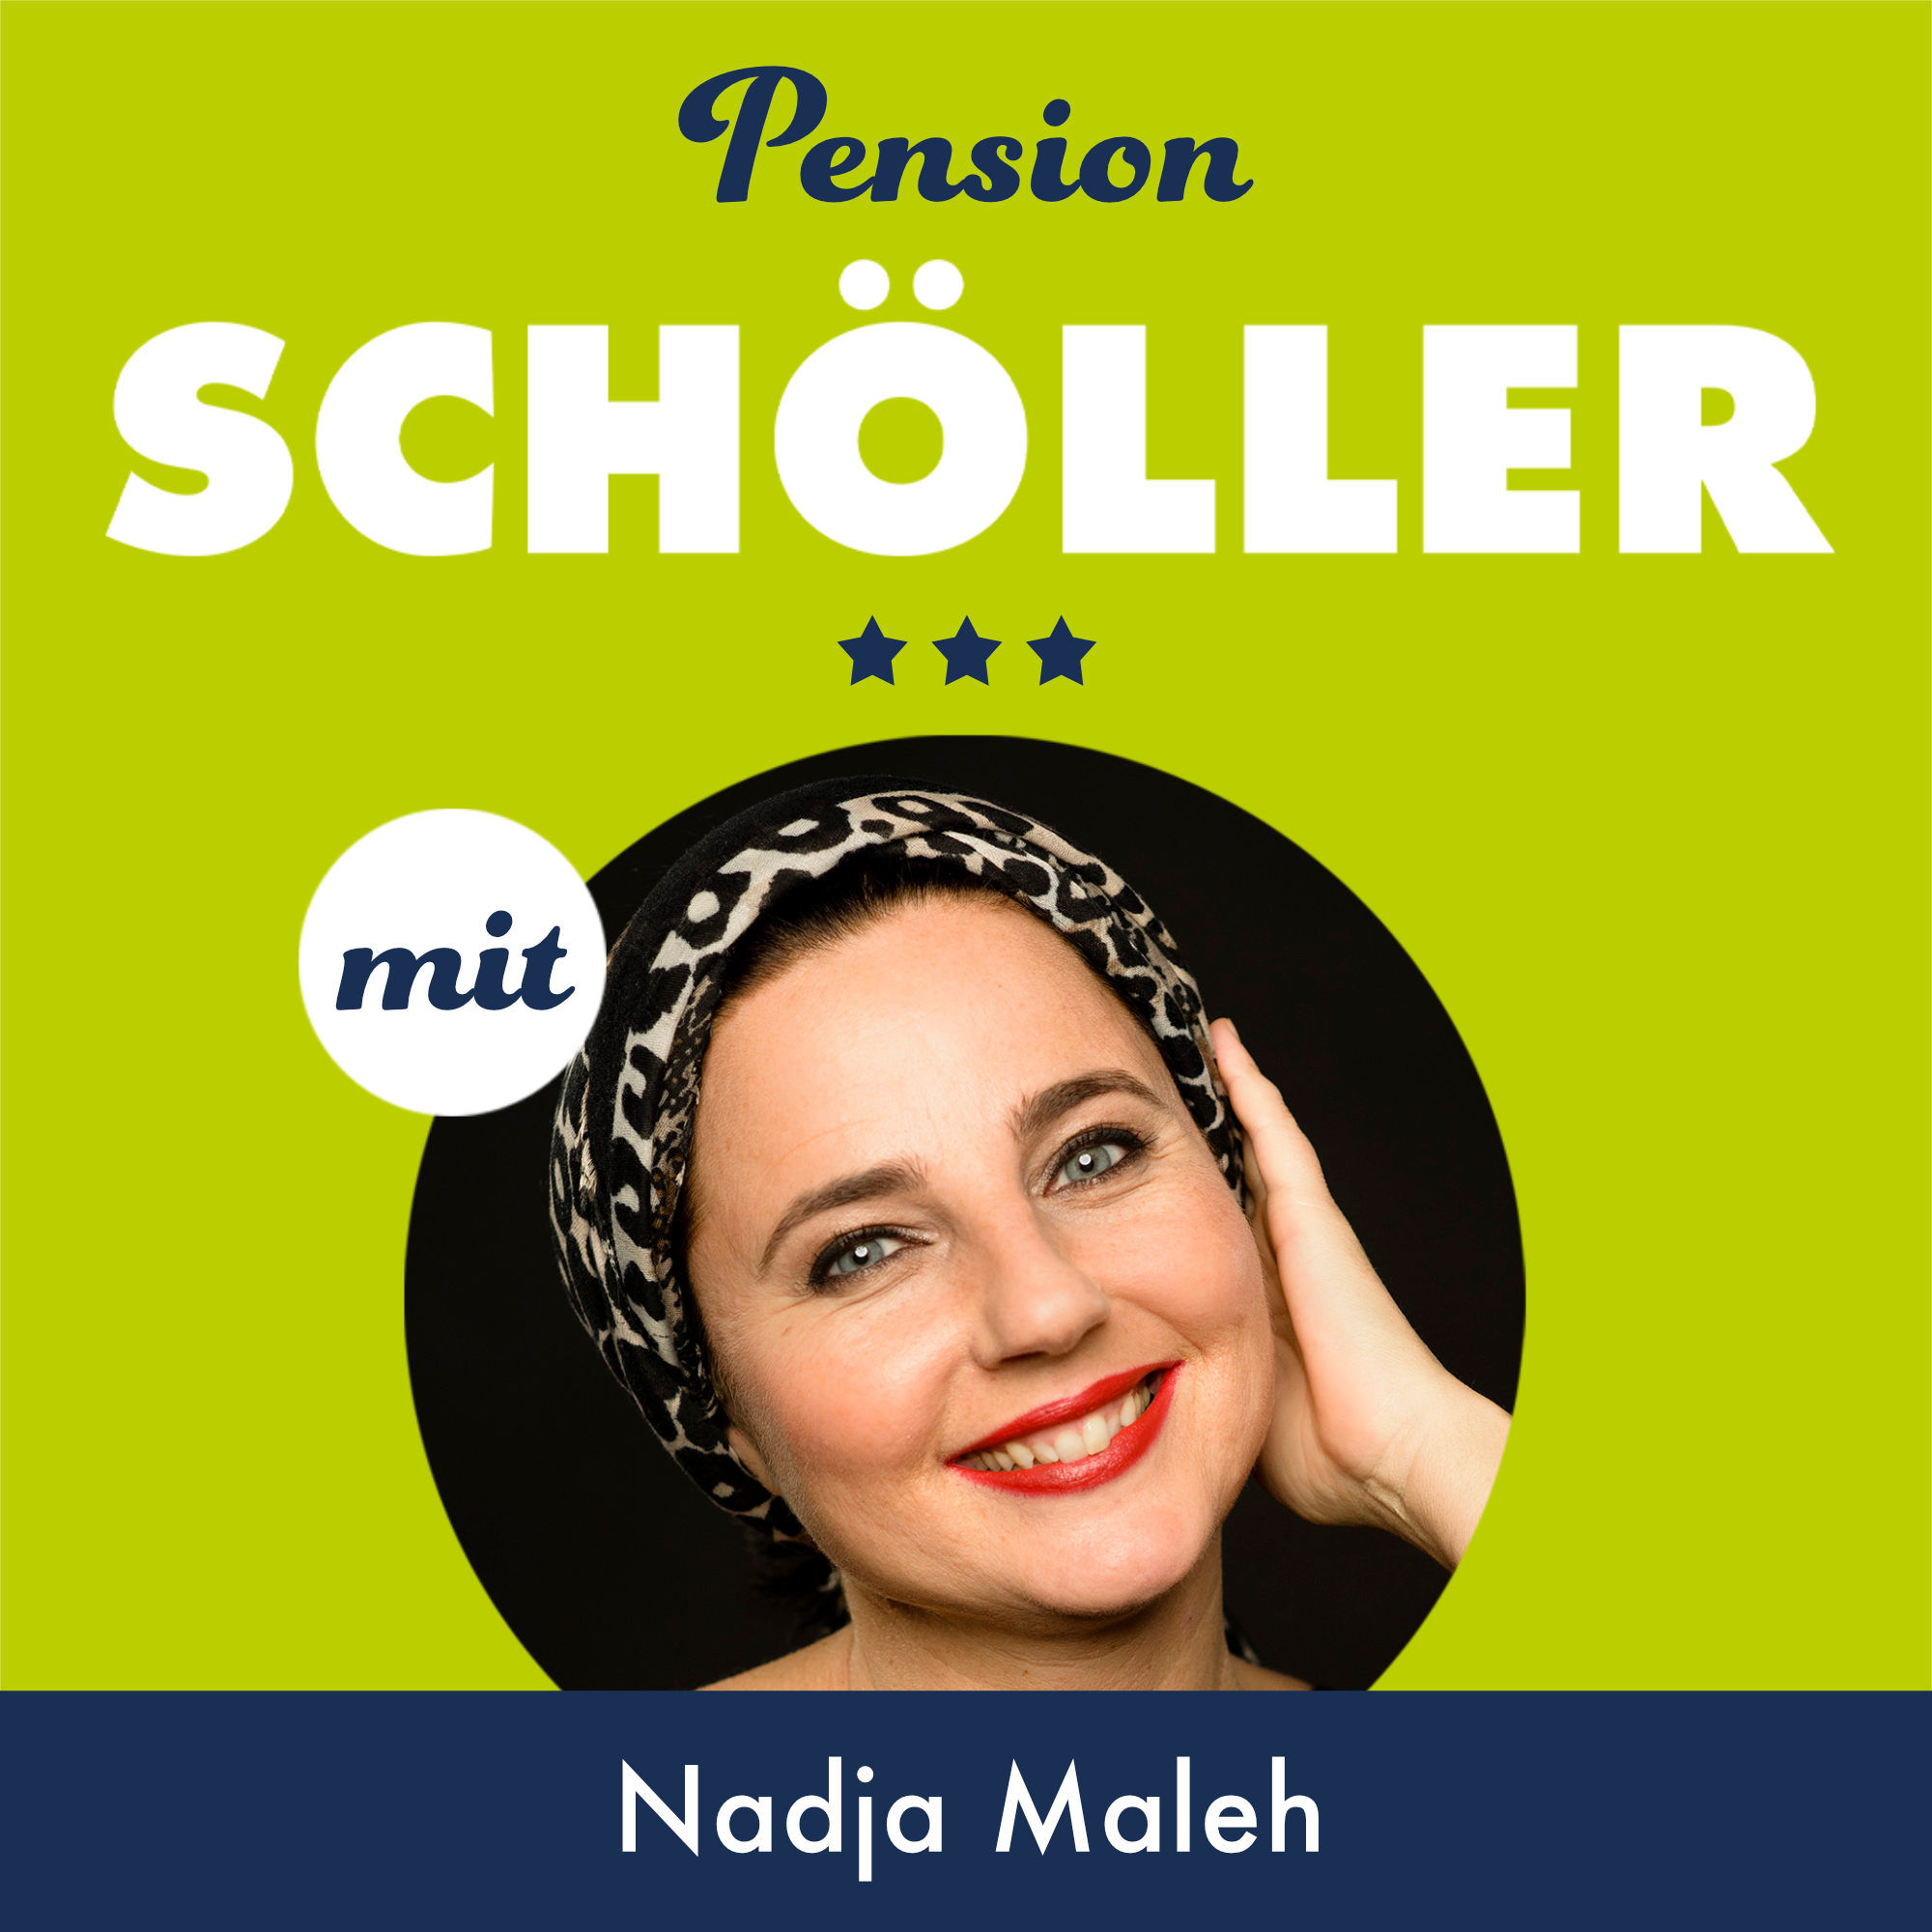 Nadja Maleh – Podcast "Pension Schöller"